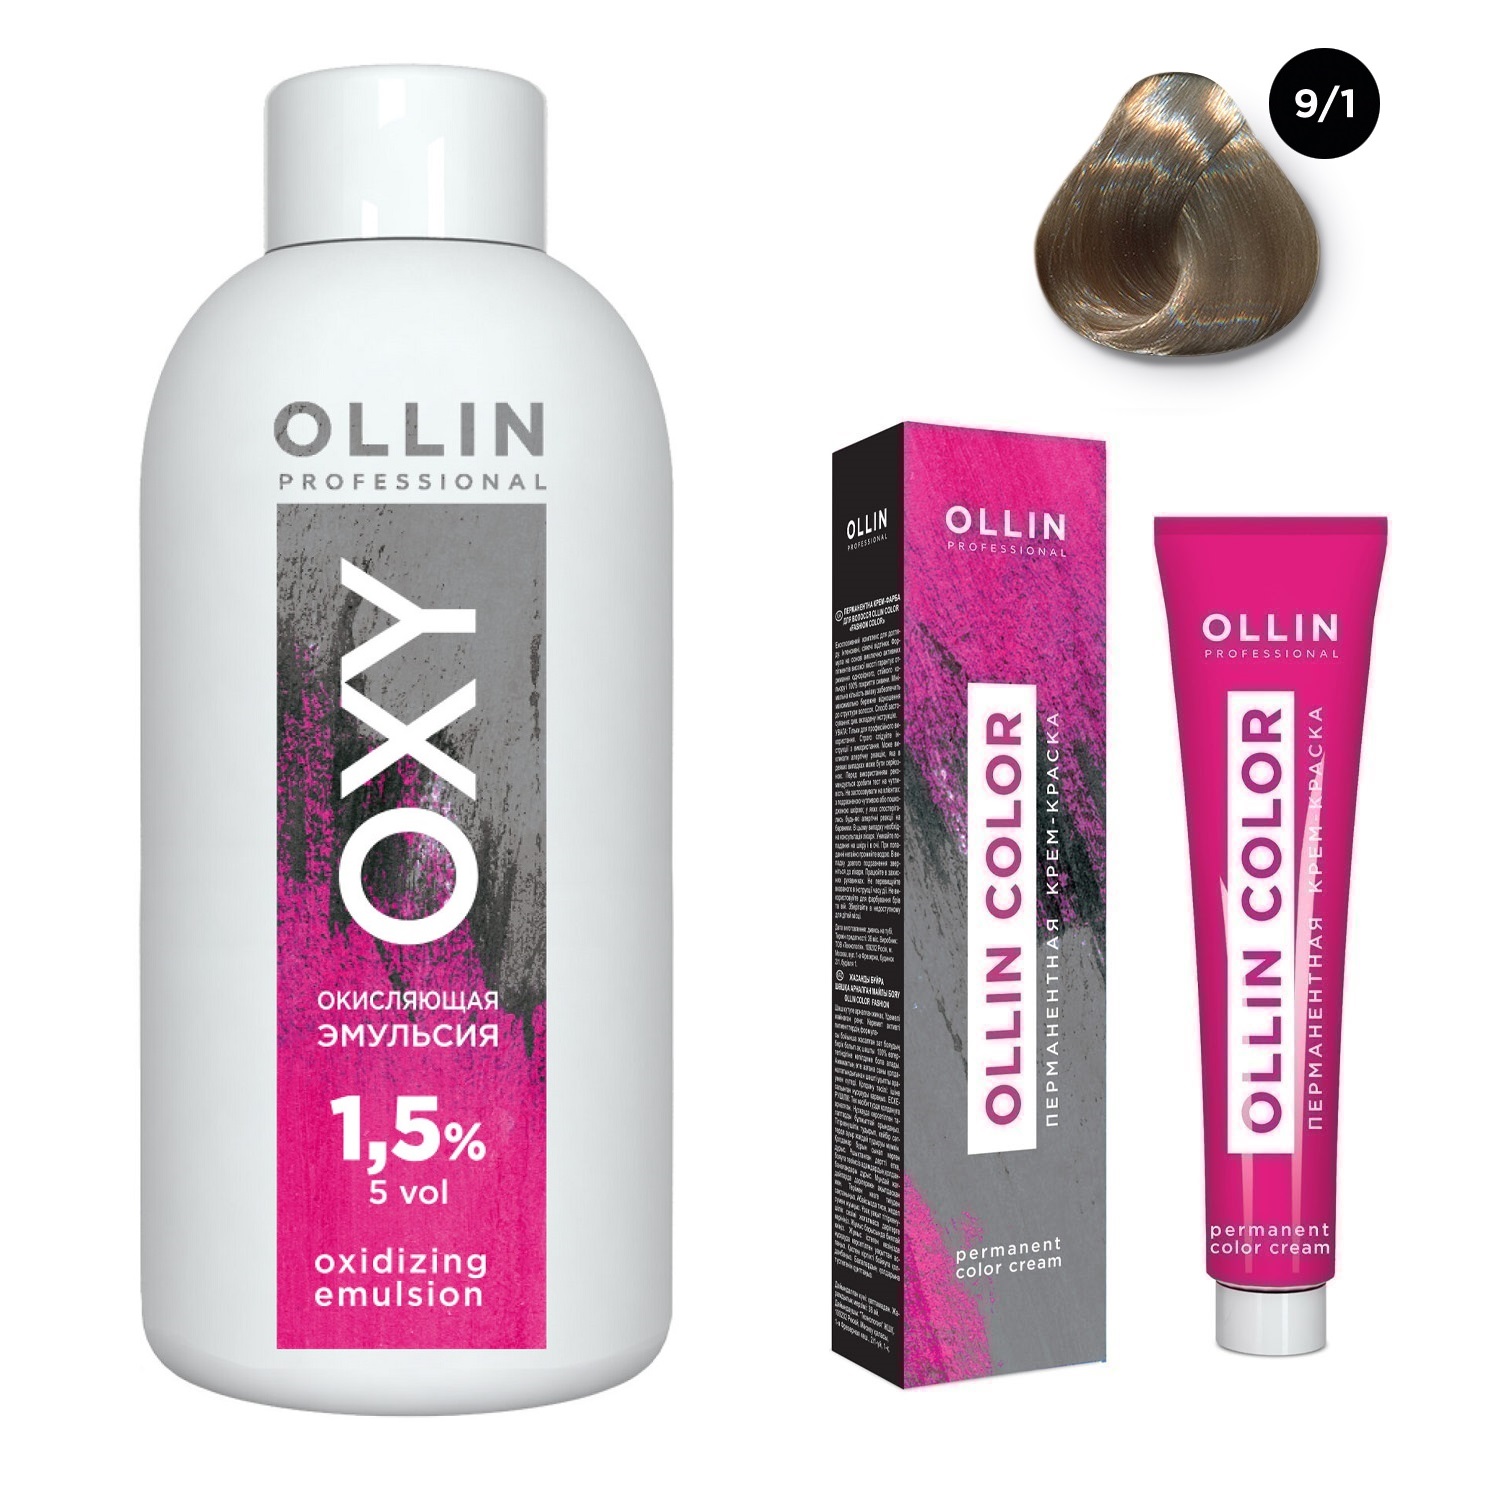 Ollin Professional Набор Перманентная крем-краска для волос Ollin Color оттенок 9/1 блондин пепельный 100 мл + Окисляющая эмульсия Oxy 1,5% 150 мл (Ollin Professional, Ollin Color) окисляющая эмульсия oxy 9% 1000 мл